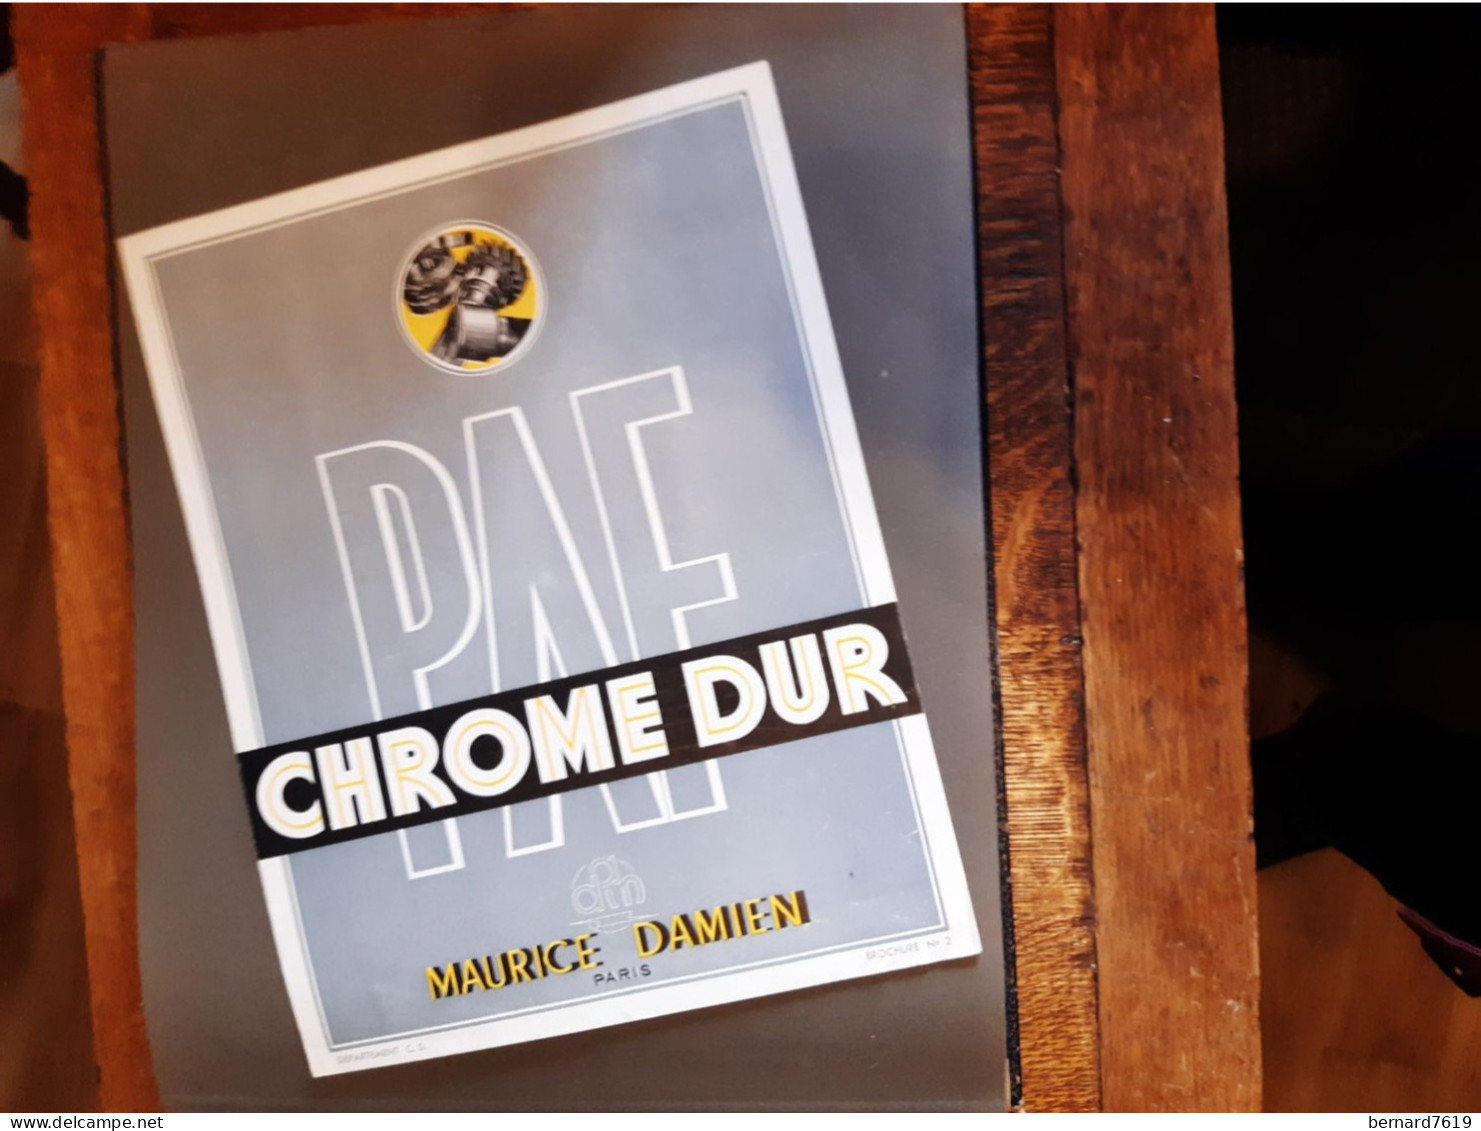 Publicite Annee Vers  1950 - Chrome Dur  Maurice Damien Paris - Byrrh - La Telephonie Francaise Paris 75011 - Pubblicitari